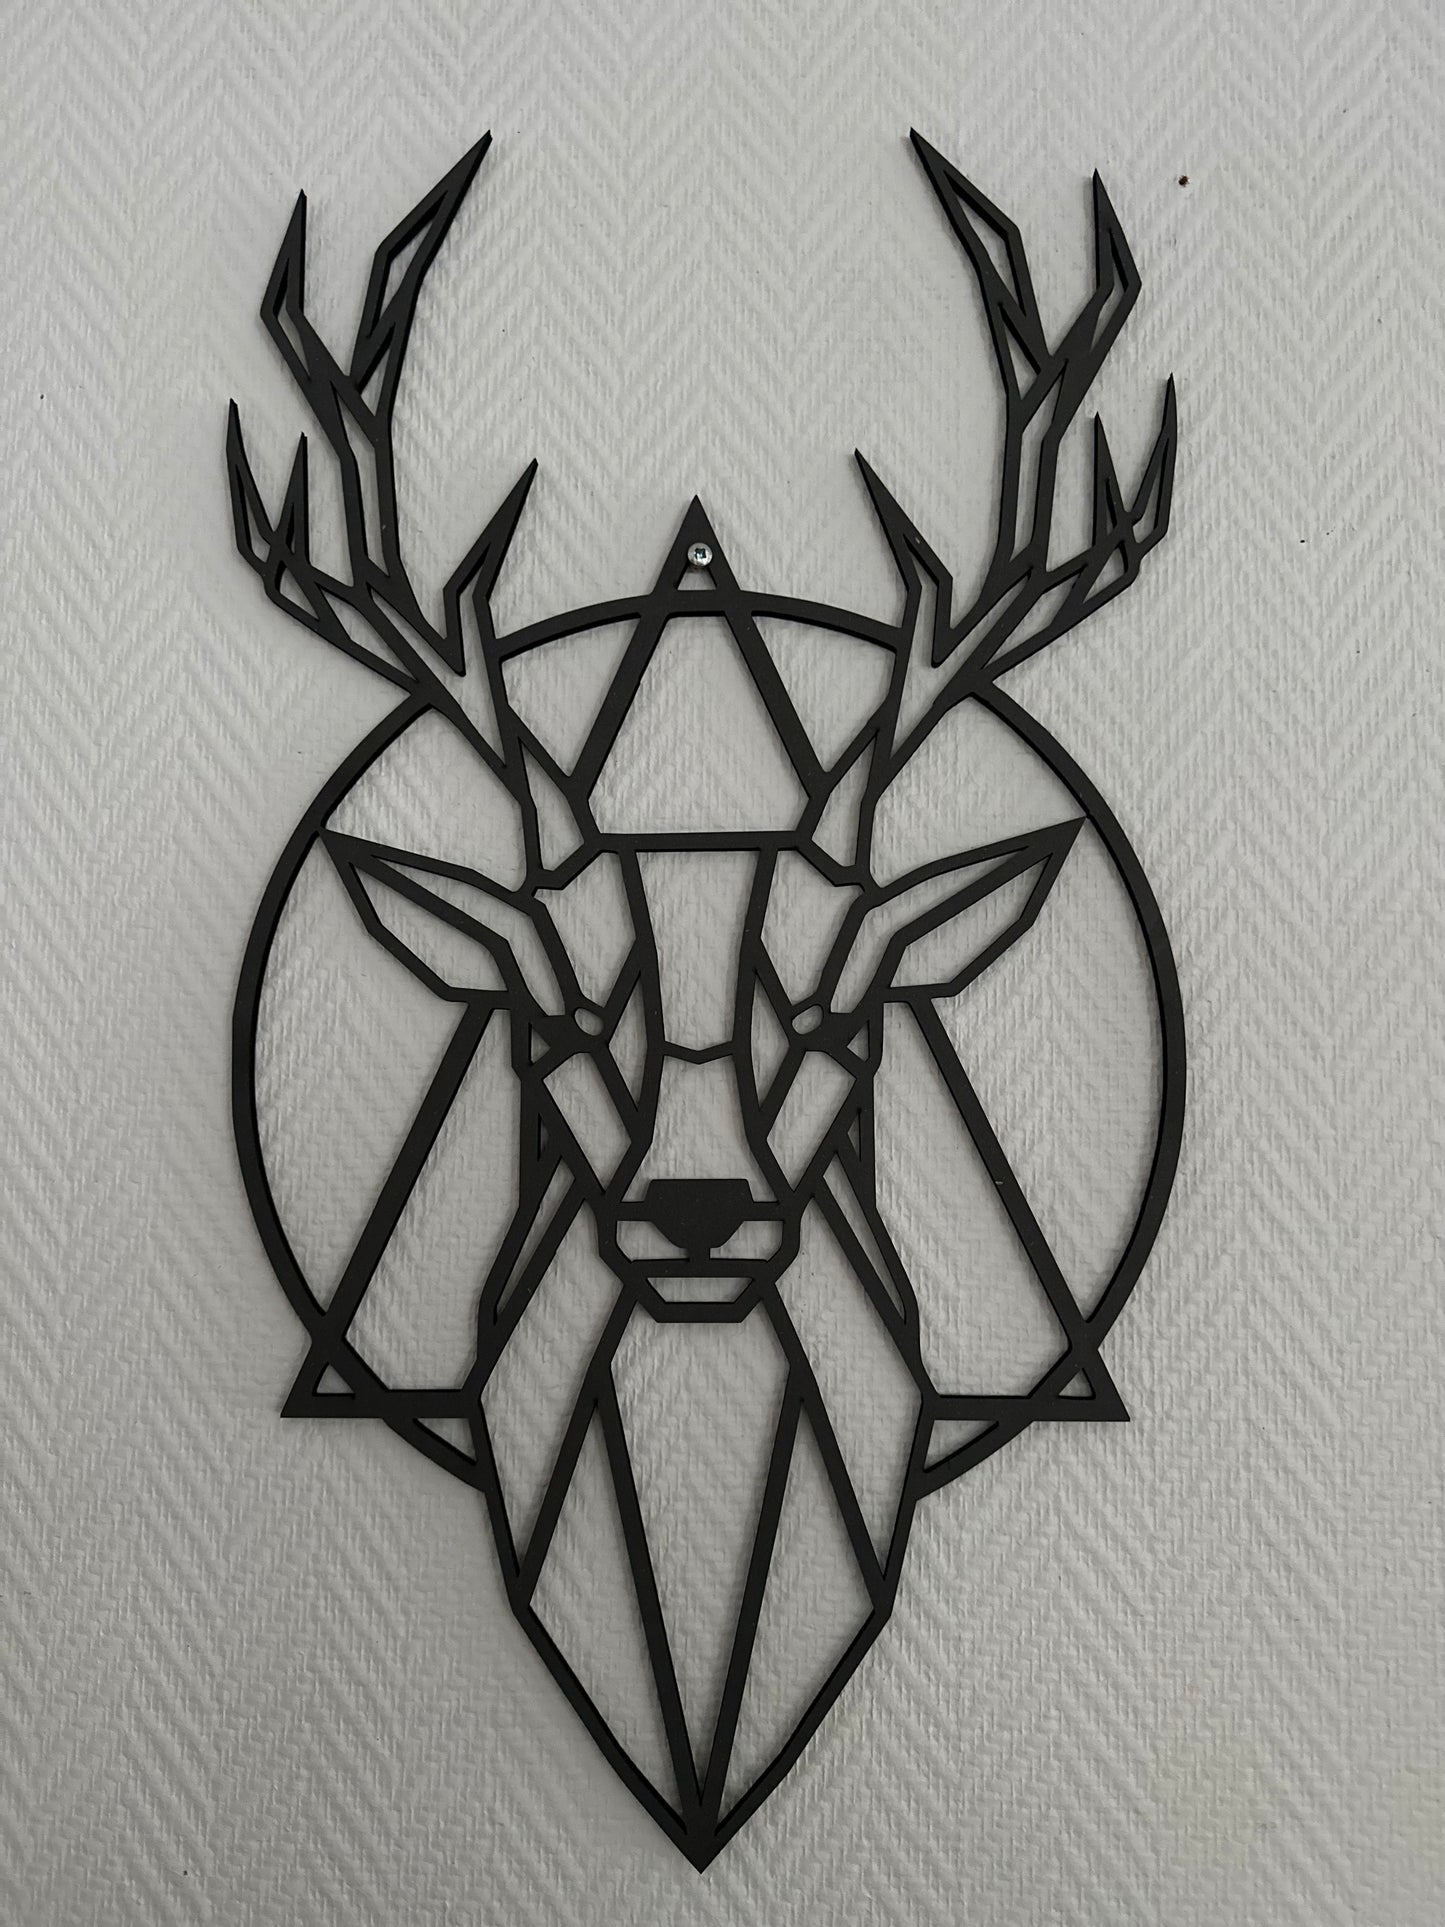 Wall art Deer